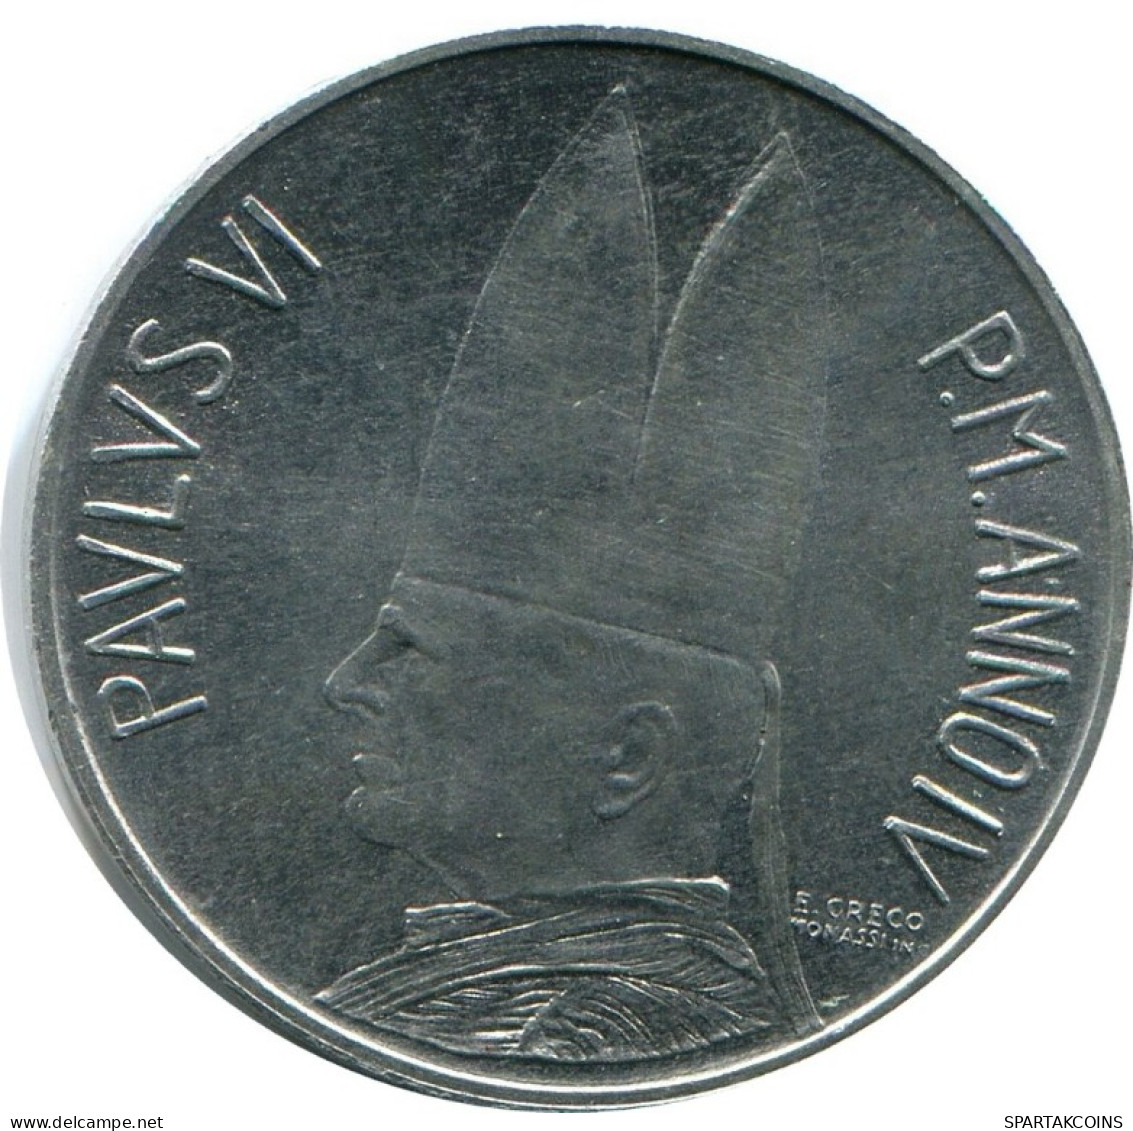 5 LIRE 1966 VATIKAN VATICAN Münze Paul VI (1963-1978) #AH373.13.D.A - Vatikan